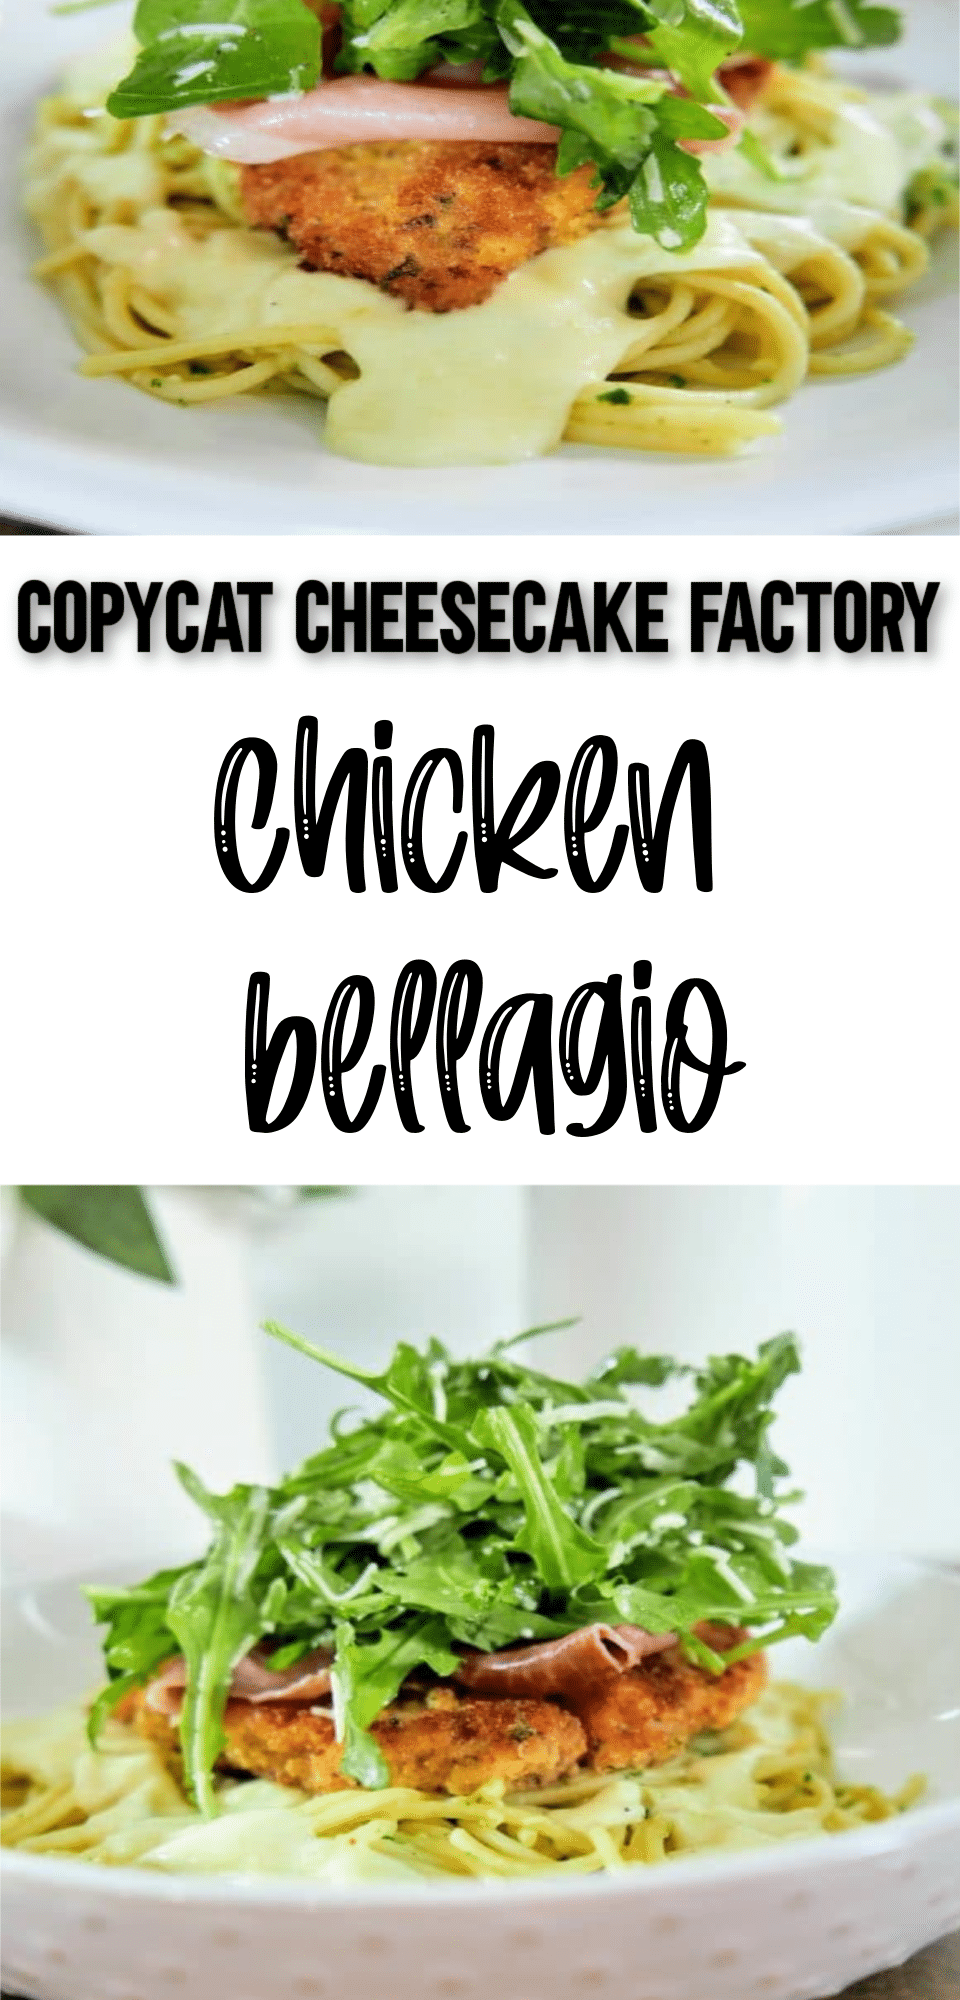 Copycat Cheesecake Factory Chicken Bellagio Recipe - Clarks Condensed